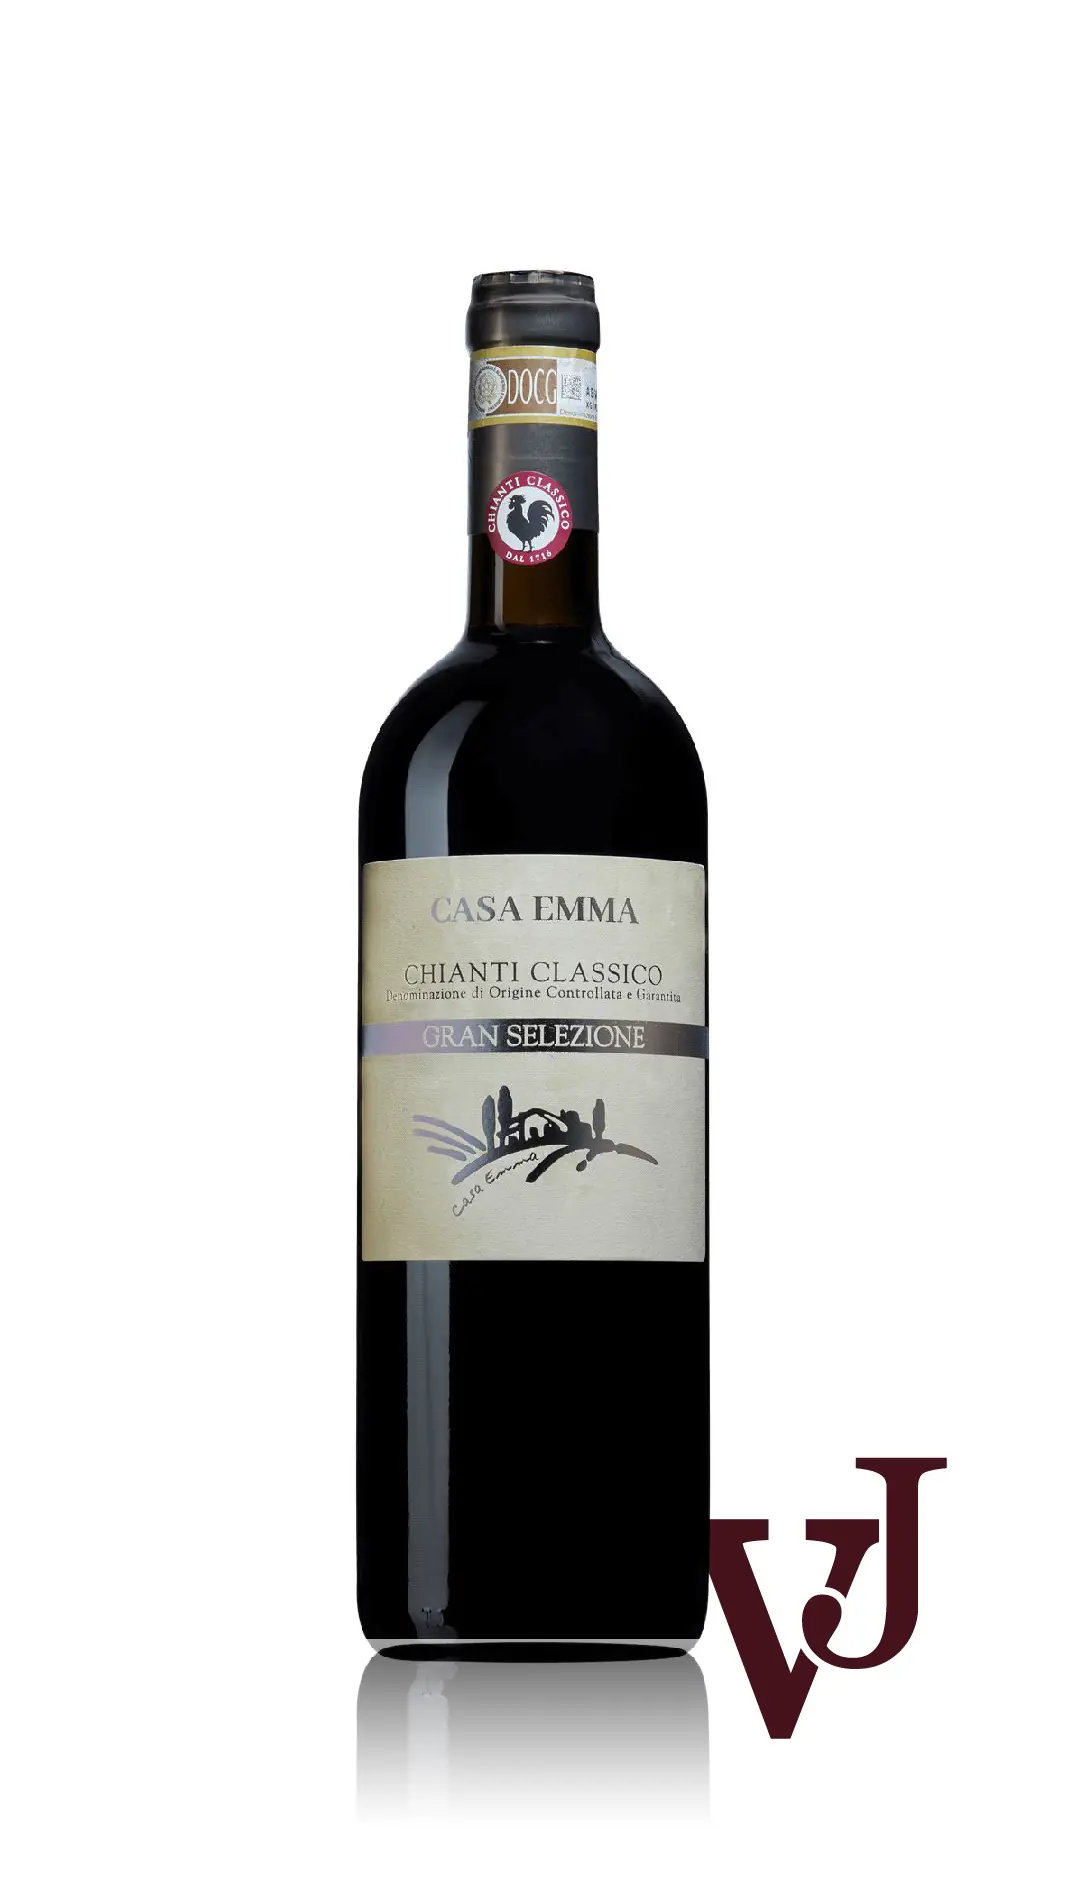 Rött Vin - Casa Emma Chianti Classico Gran Selezione 2018 artikel nummer 9045201 från producenten Casa Emma från området Italien - Vinjournalen.se